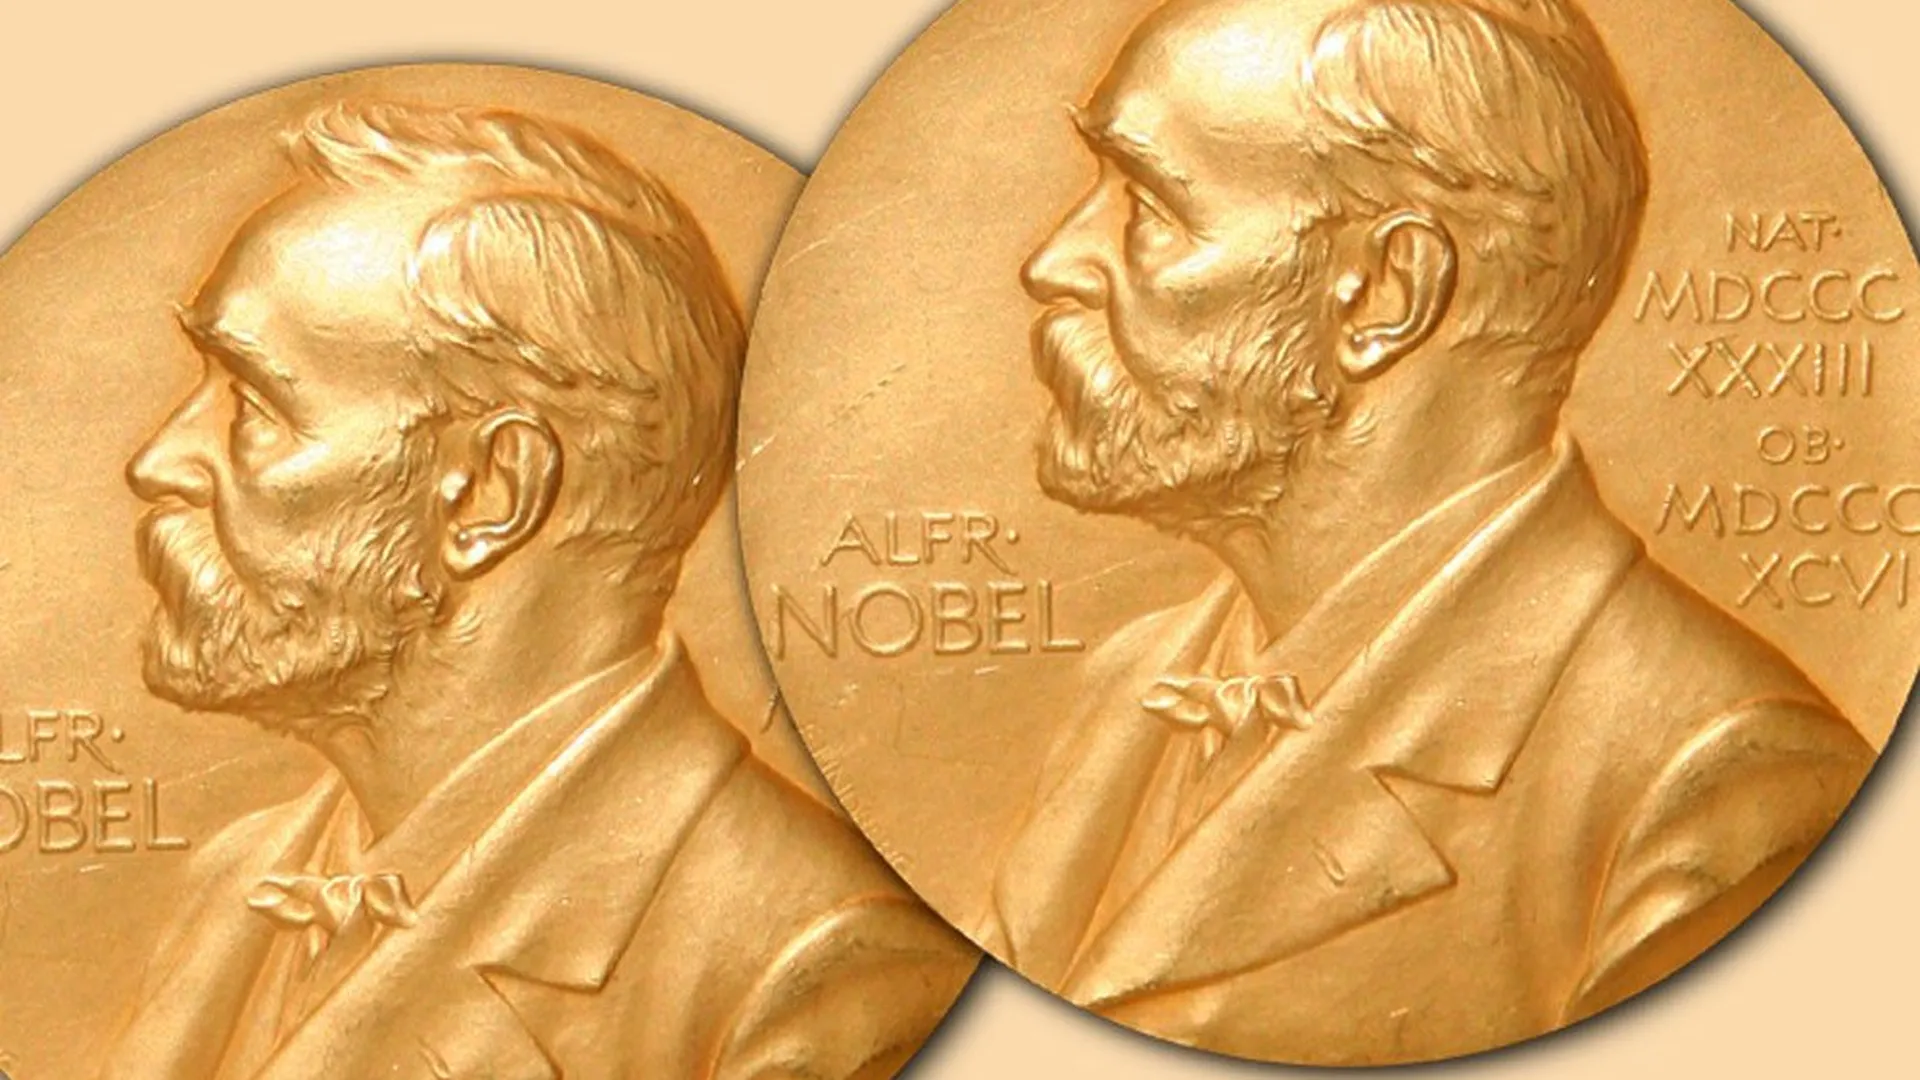 3 лауреата нобелевской премии. Нобелевская премия по химии 1911. Медаль Нобелевской премии по литературе. Нобелевская премия по химии 1903. Медаль Нобеля и Нобелевская премия.